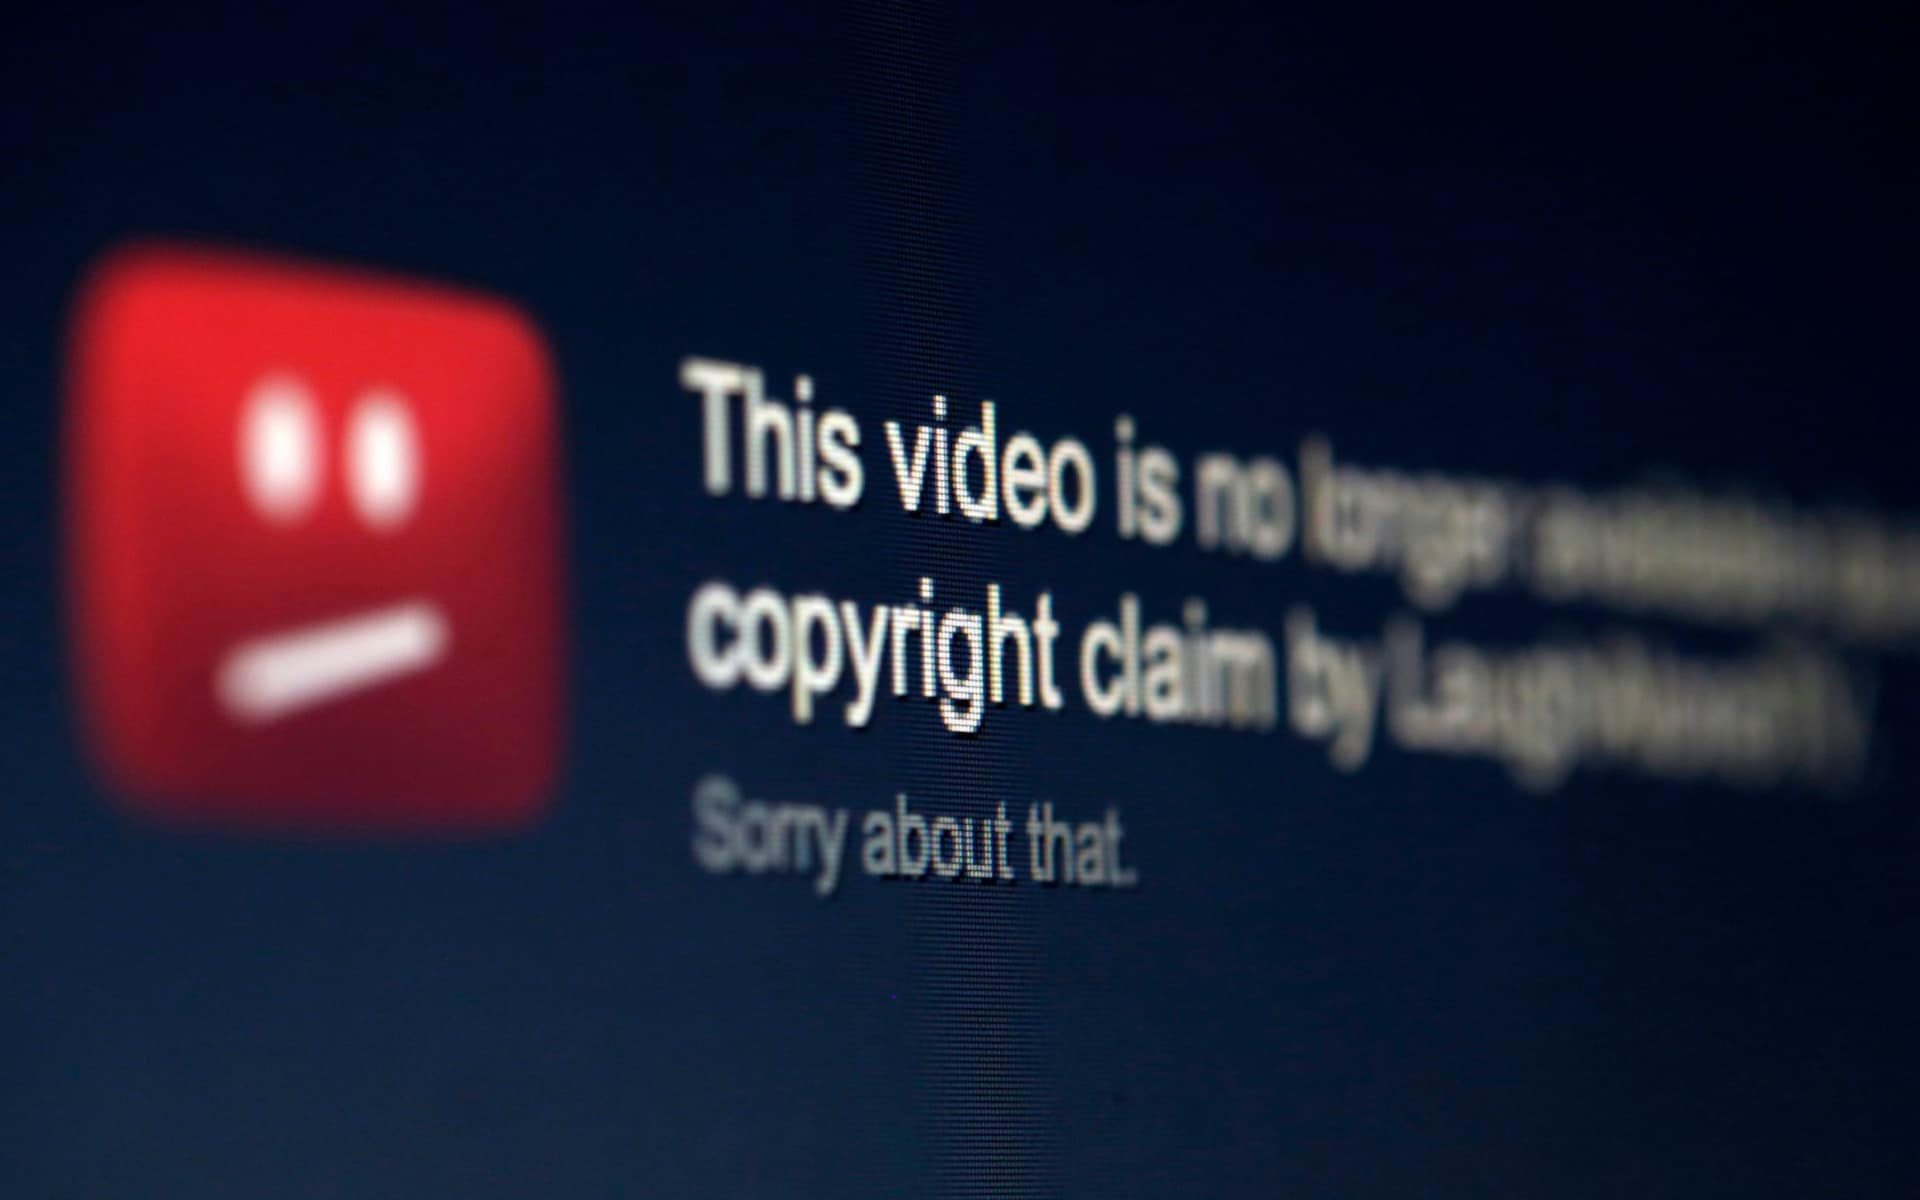 youtube copyright claim